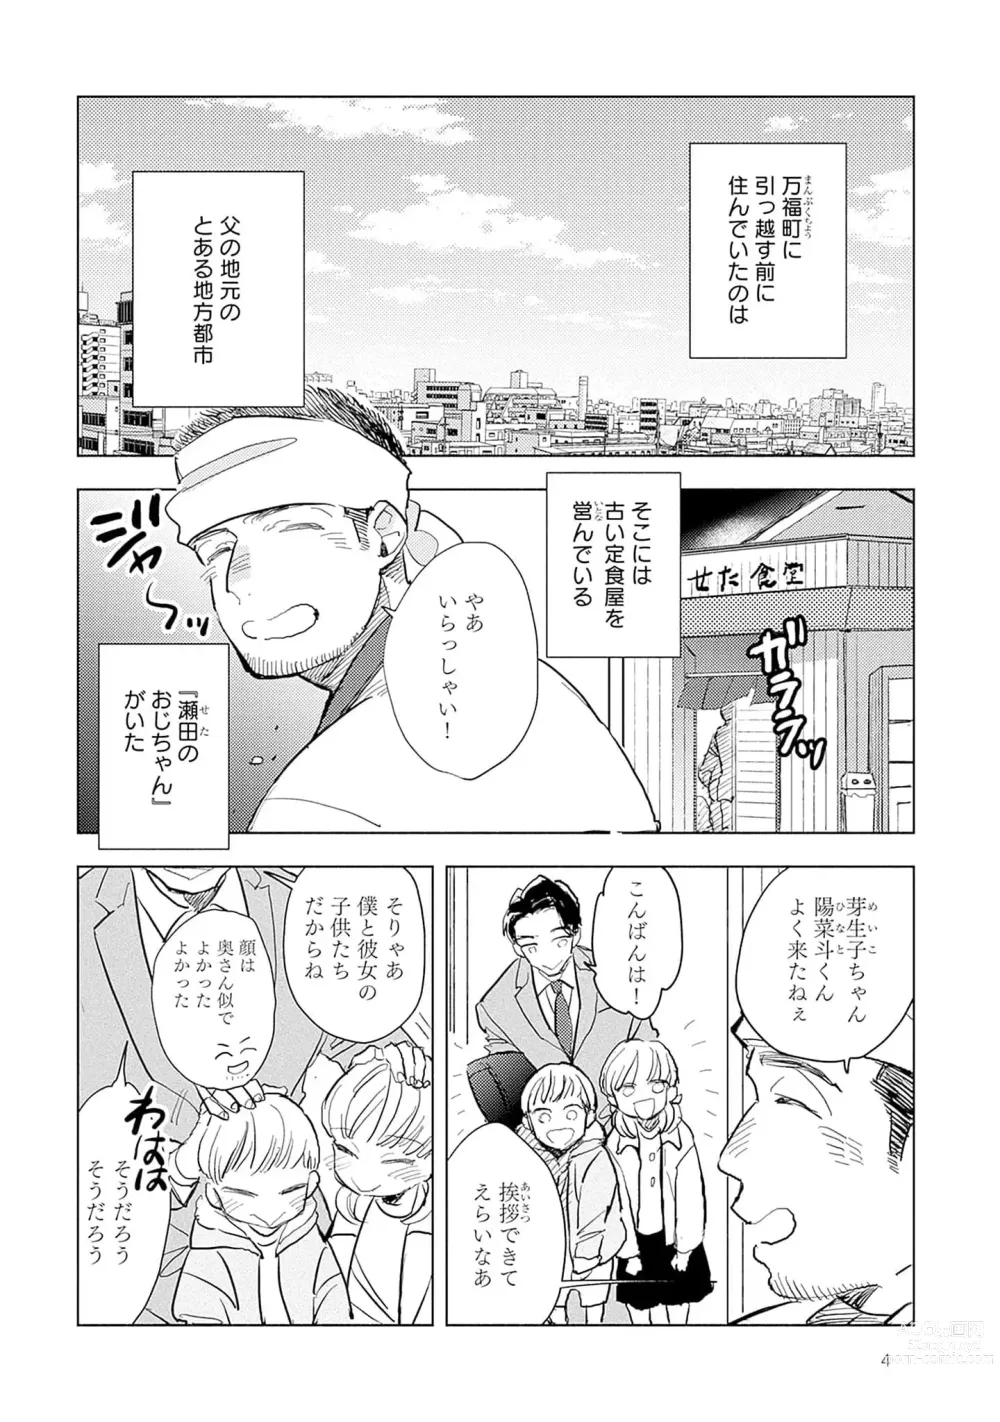 Page 6 of manga Strawberry na Days 2